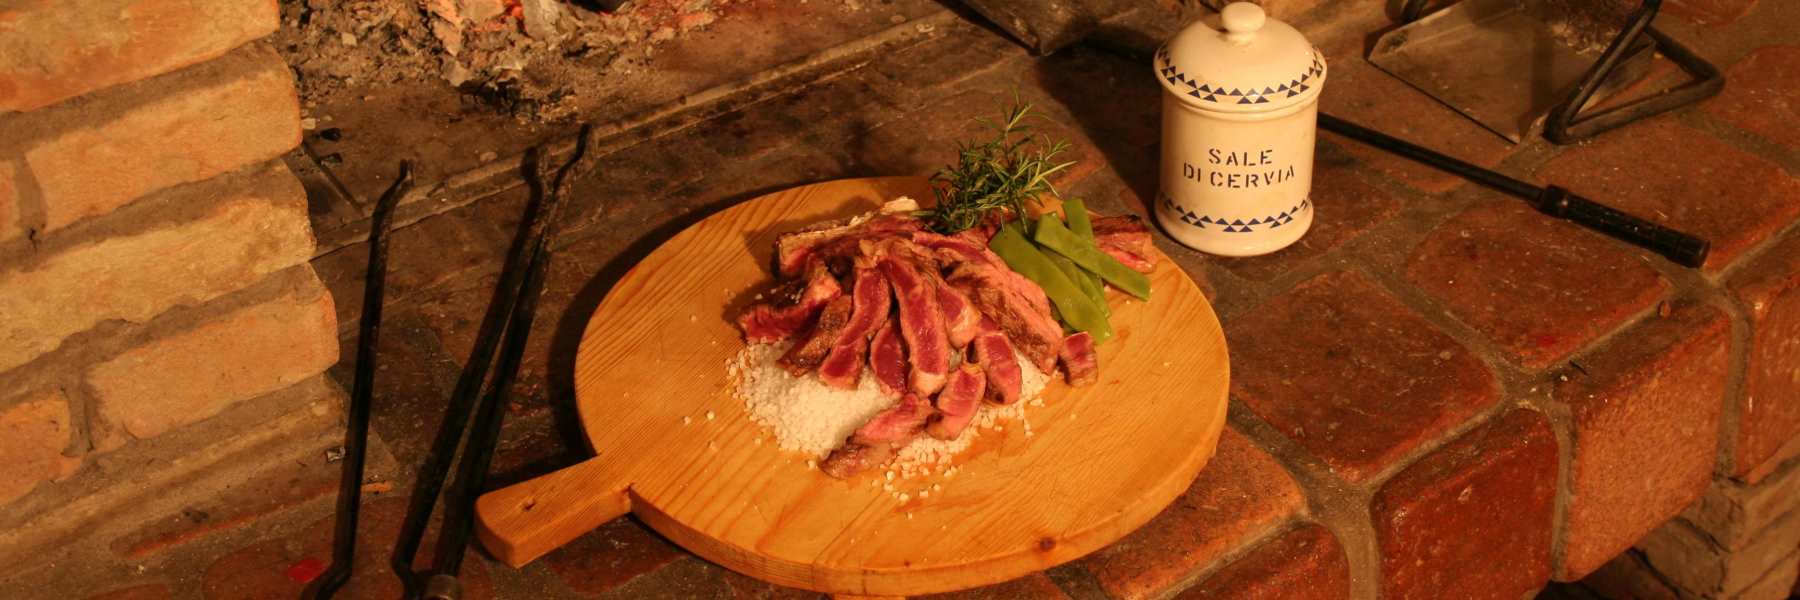 Fillet steak with herbs on a Cervia salt tile